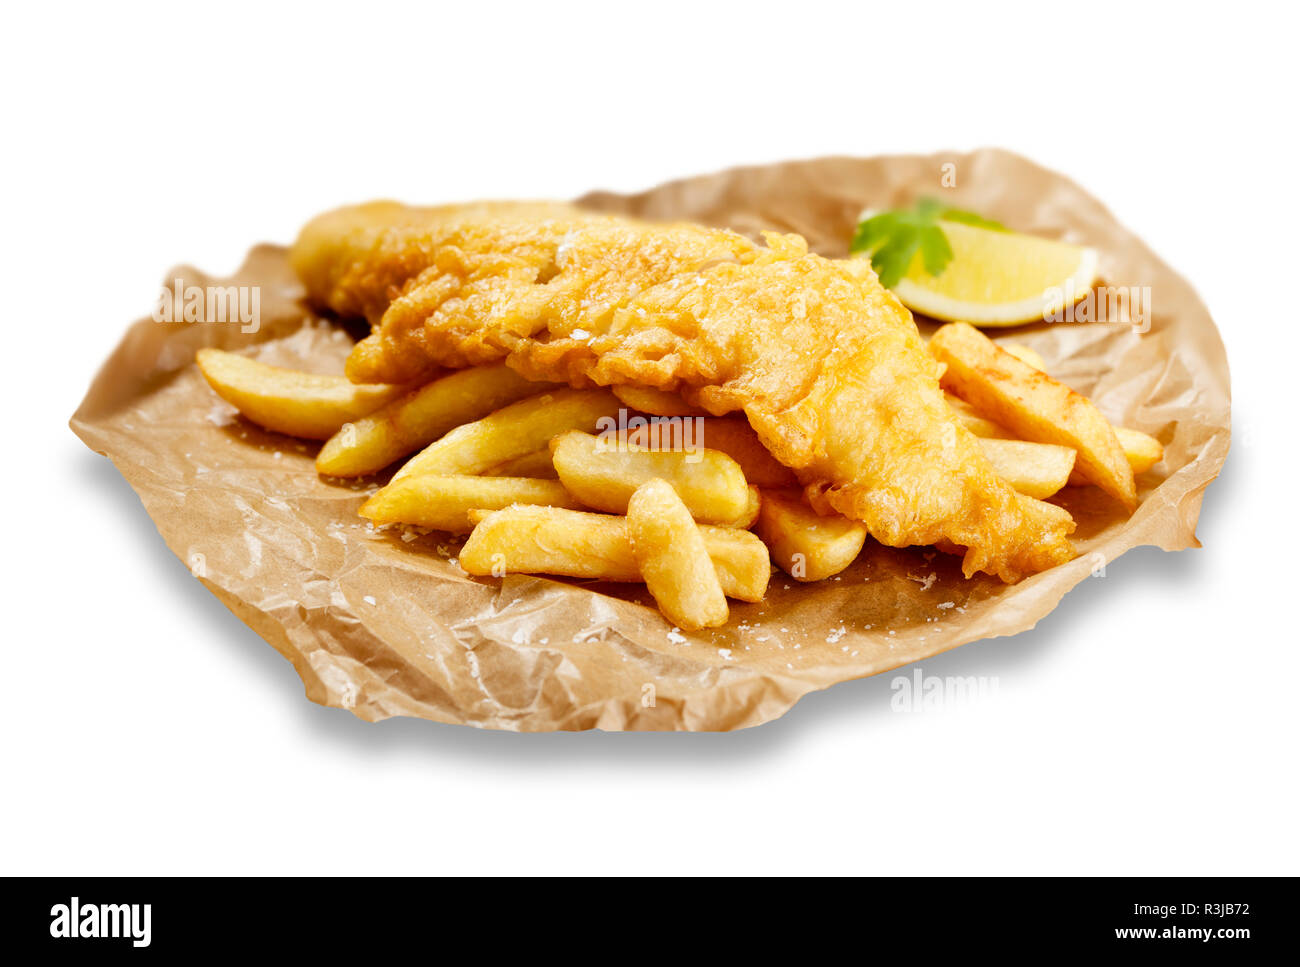 Isolierte Images von Fisch und Chips, in braunes Papier, mit einem Keil von Zitrone. Stockfoto